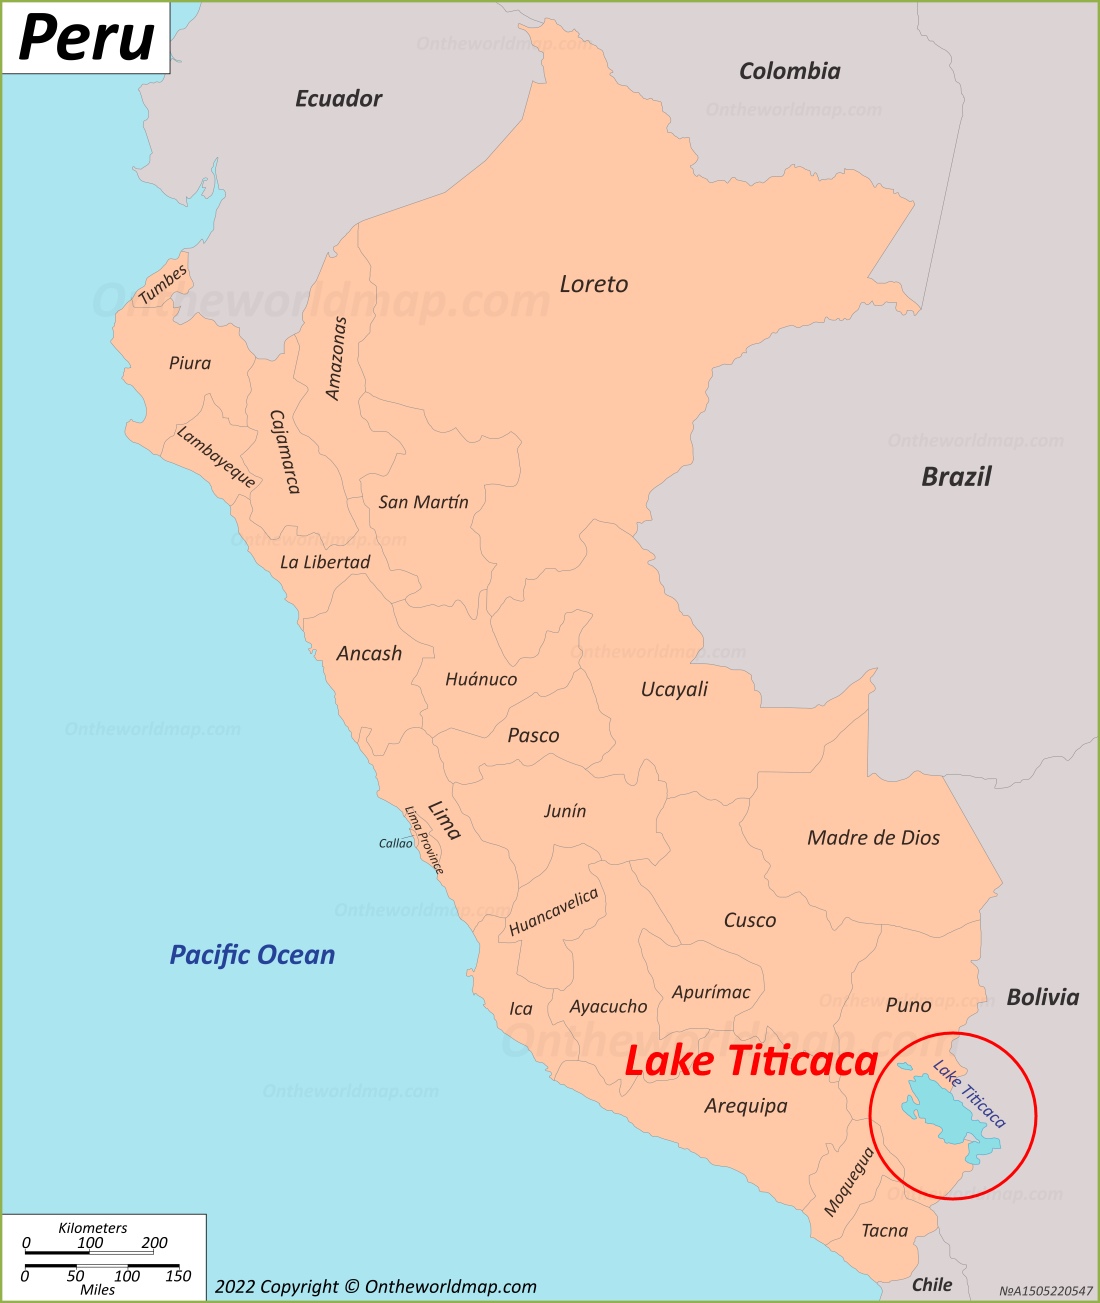 Ubicación del lago Titicaca en el mapa de Perú